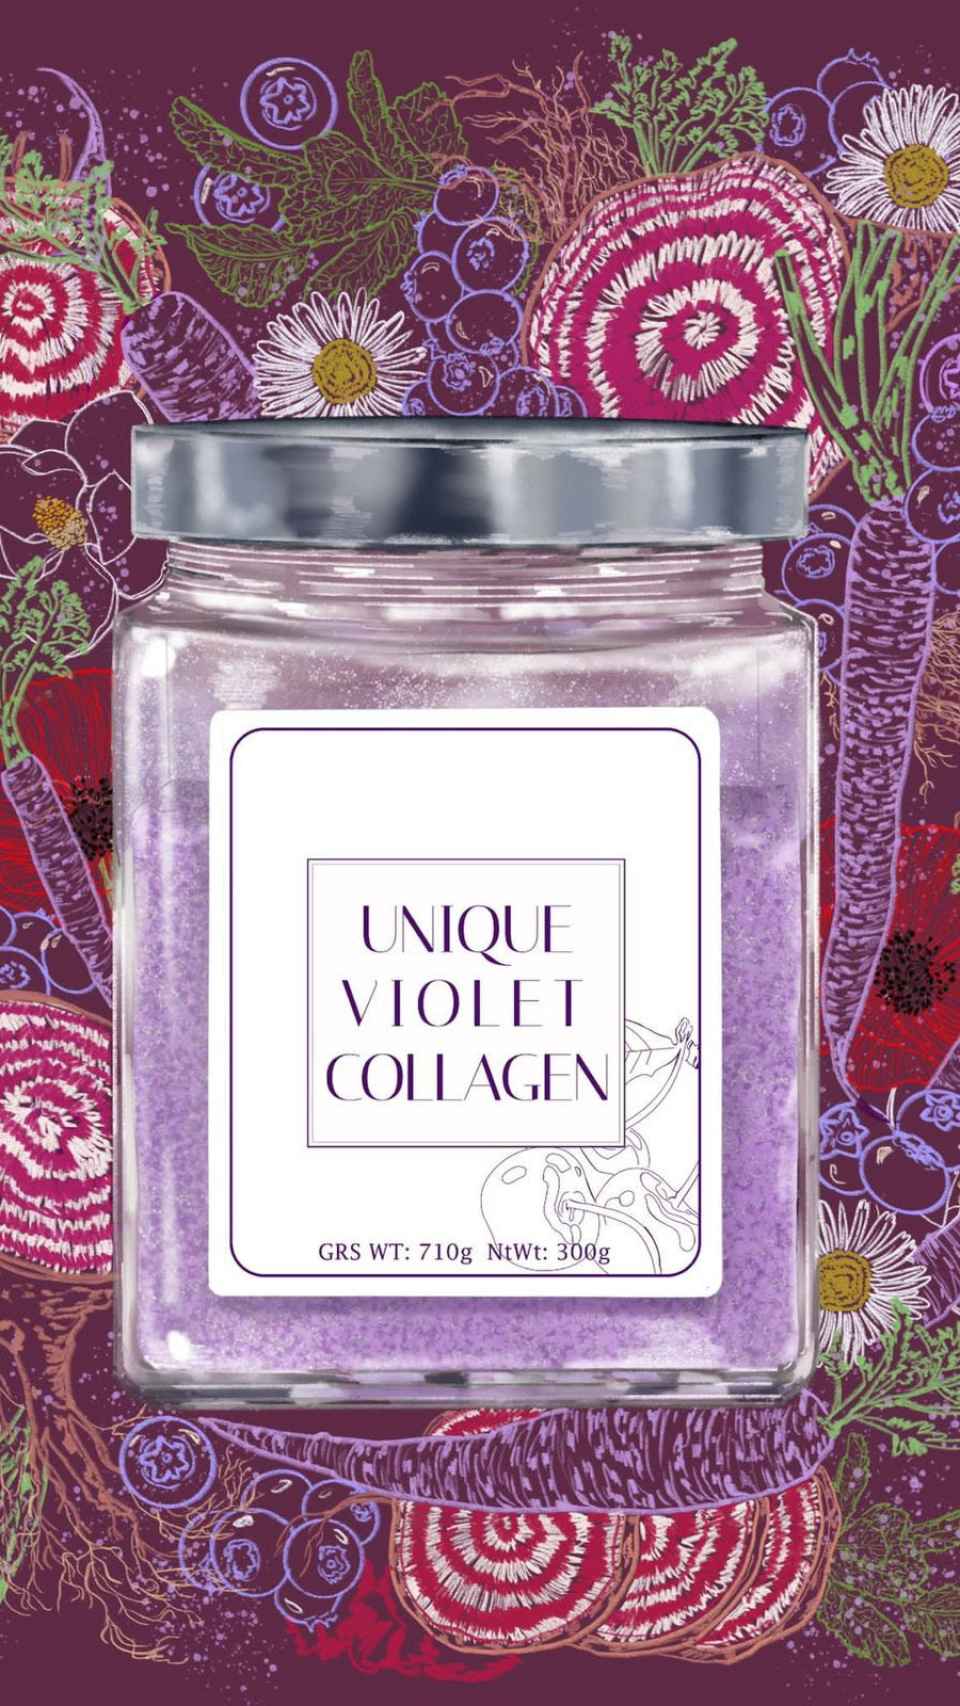 El producto de Unique Violet Collagen.